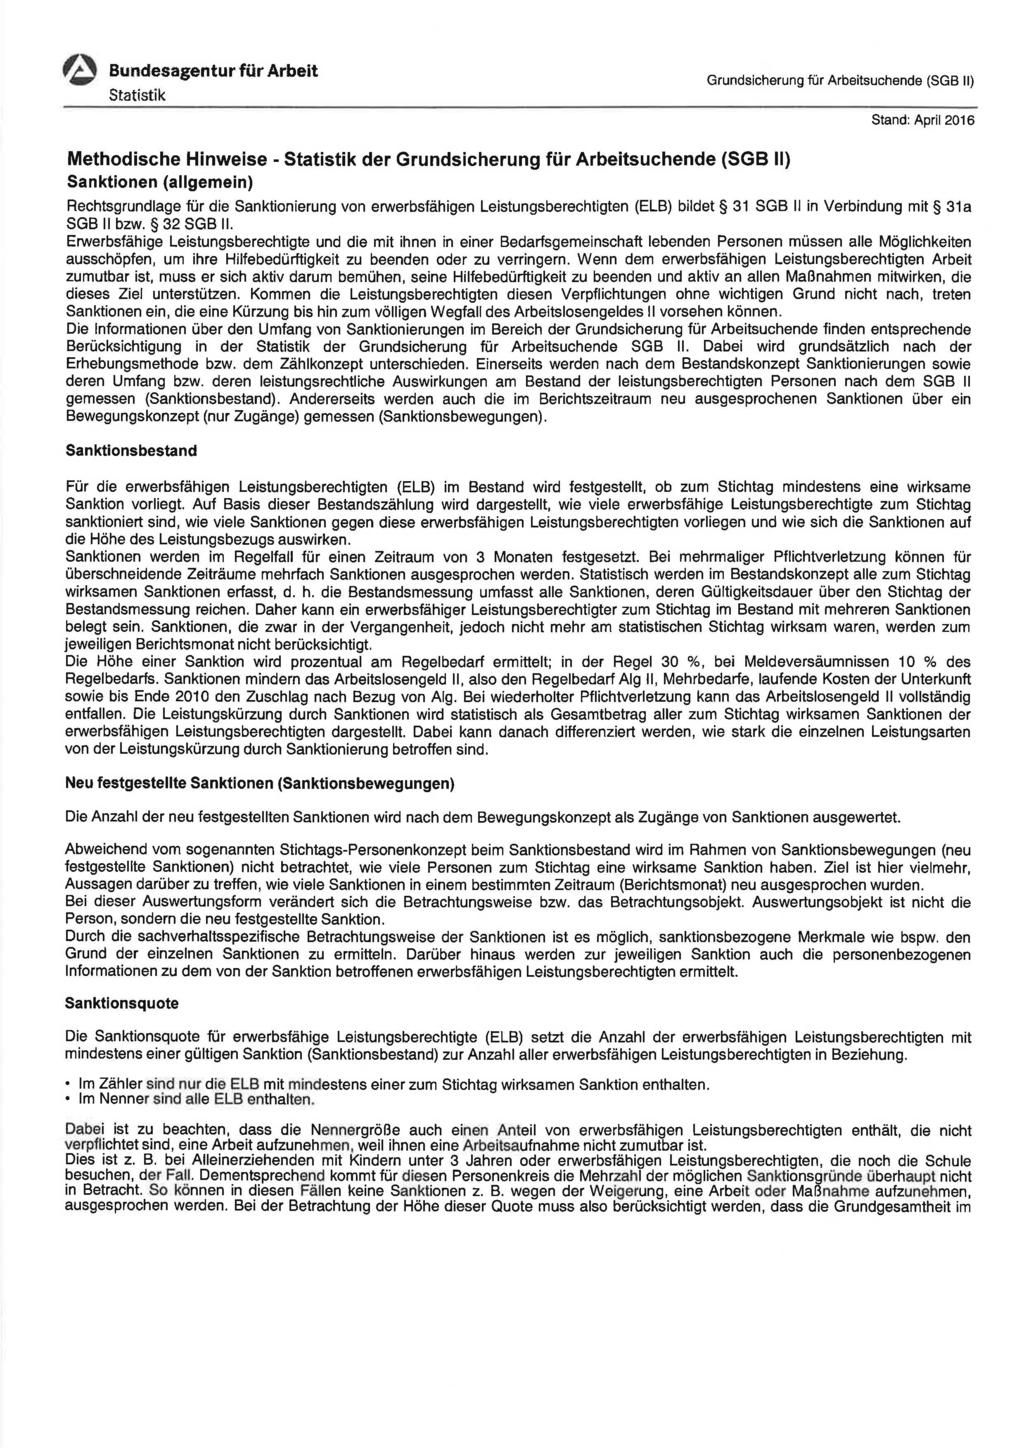 e Bundesagentur für Arbeit Stand: April 2016 Methodische Hinweise- der Sanktionen (allgemein) Rechtsgrundlage für die Sanktionierung von erwerbsfähigen Leistungsberechtigten (ELB) bildet 31 SGB II in